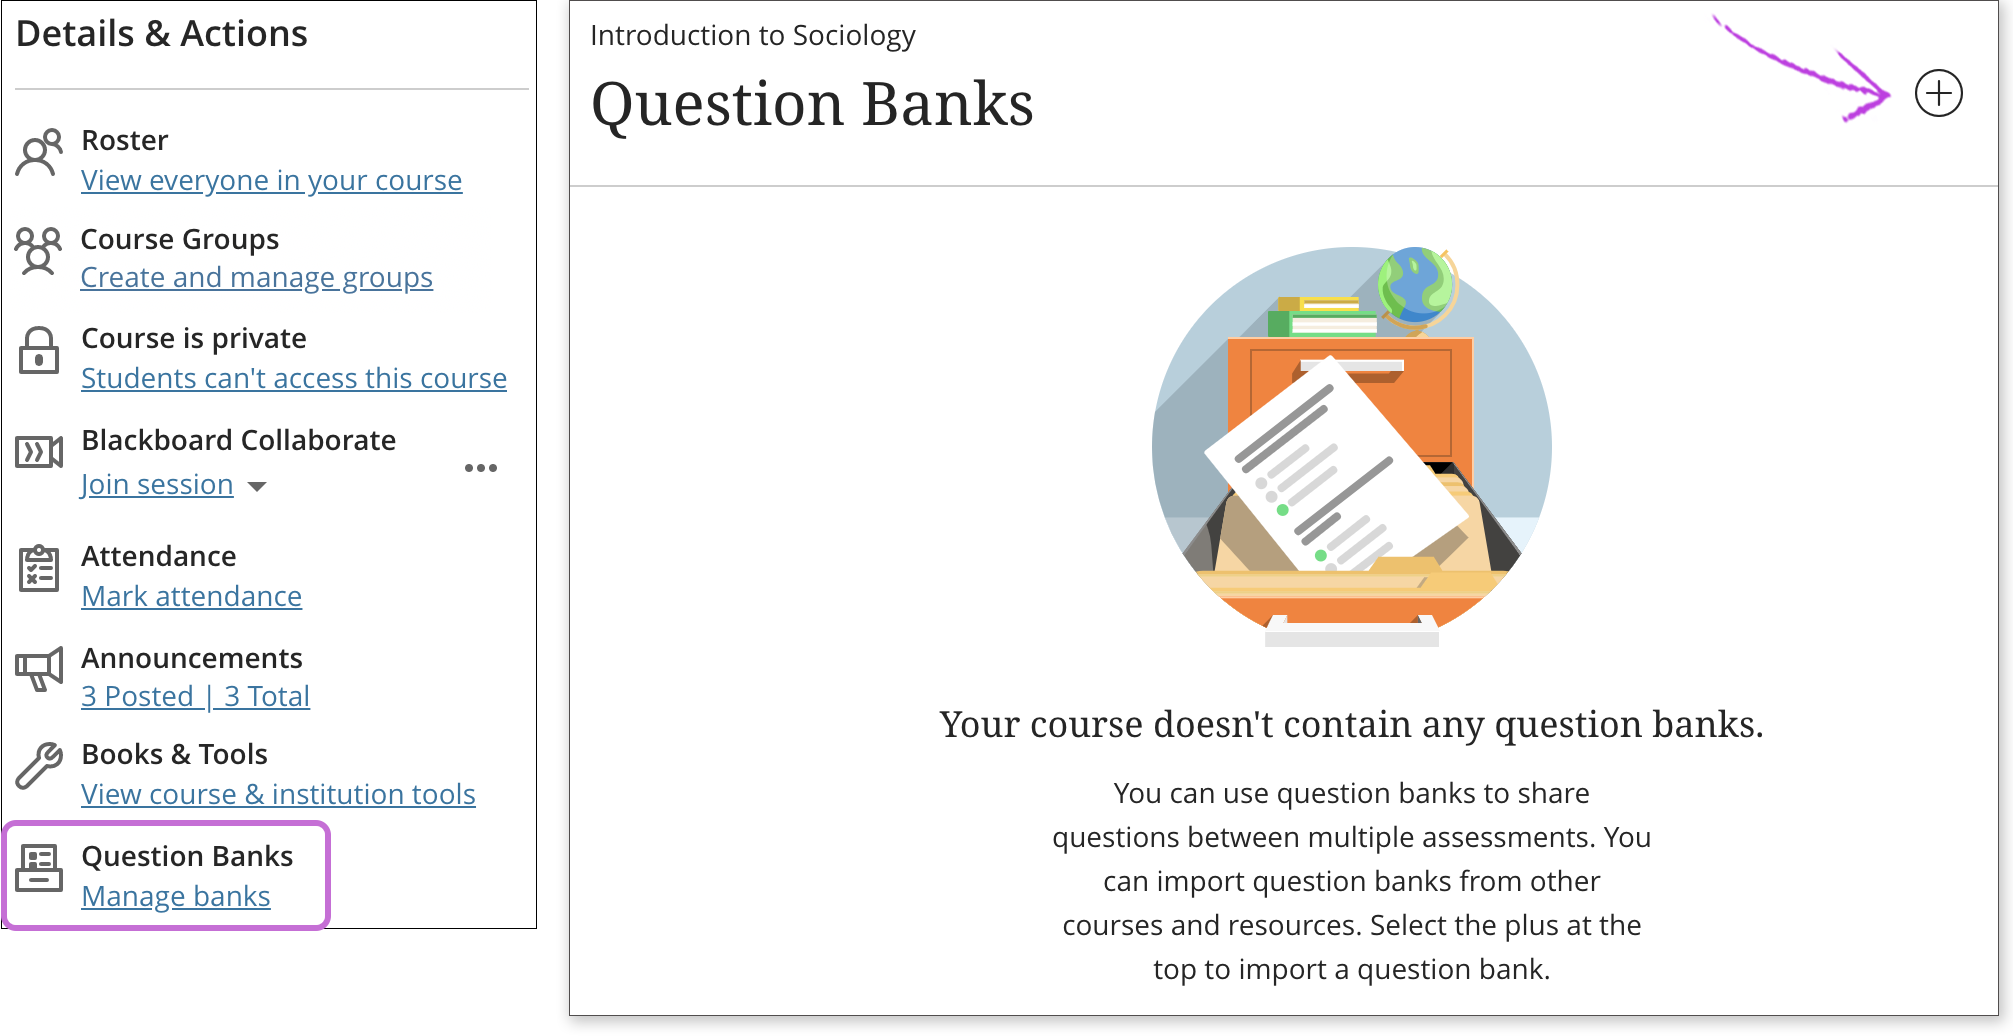 Venster Vragenbanken is geopend en de knop Vragen toevoegen is gemarkeerd.